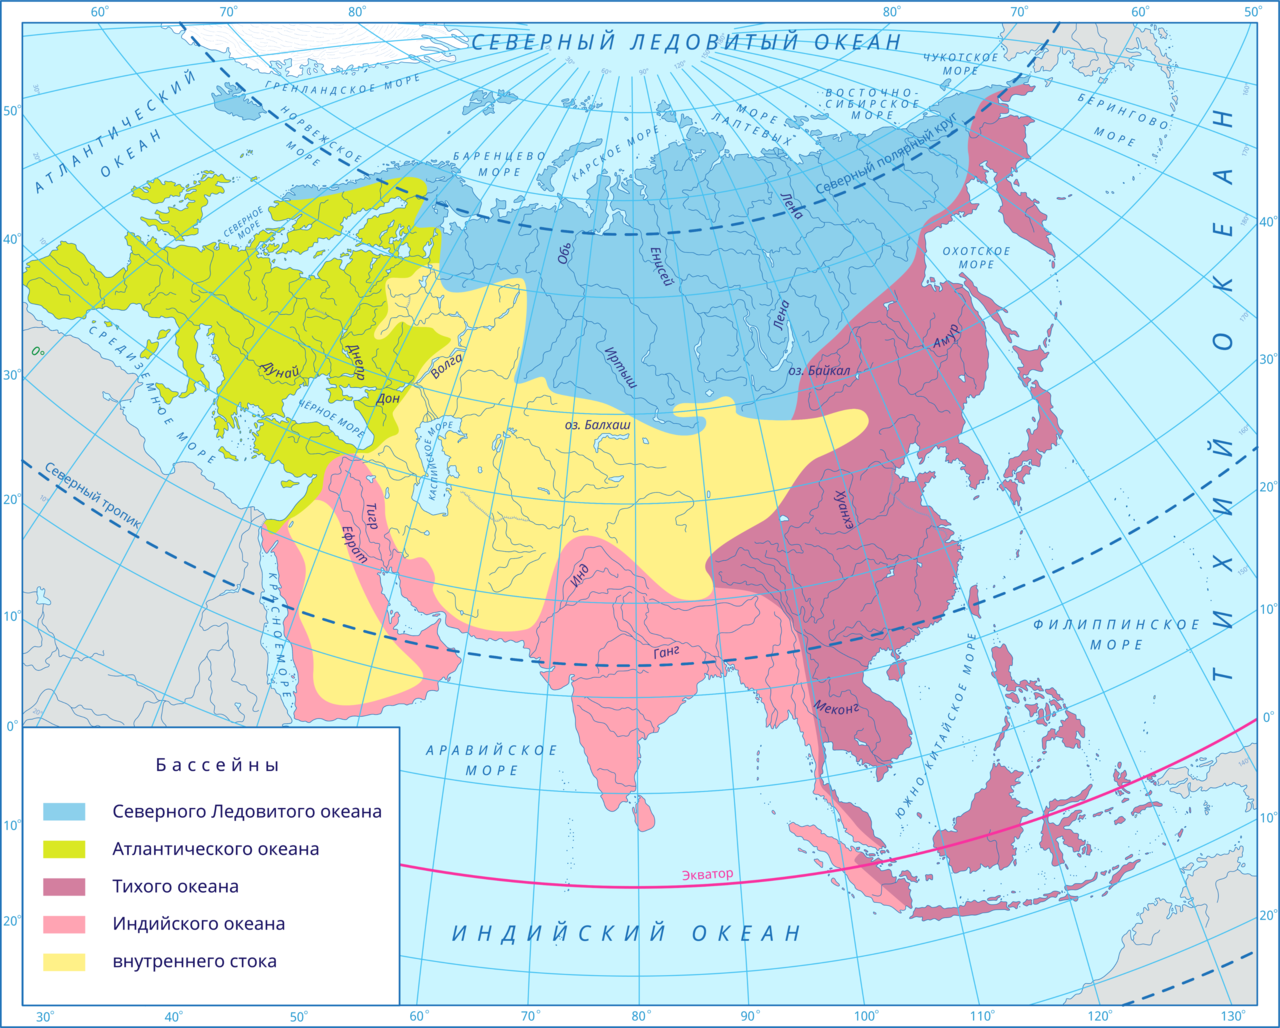 Реки бассейна внутреннего стока Евразии. Границы бассейнов океанов Евразии. Бассейн внутреннего стока Евразии на карте.